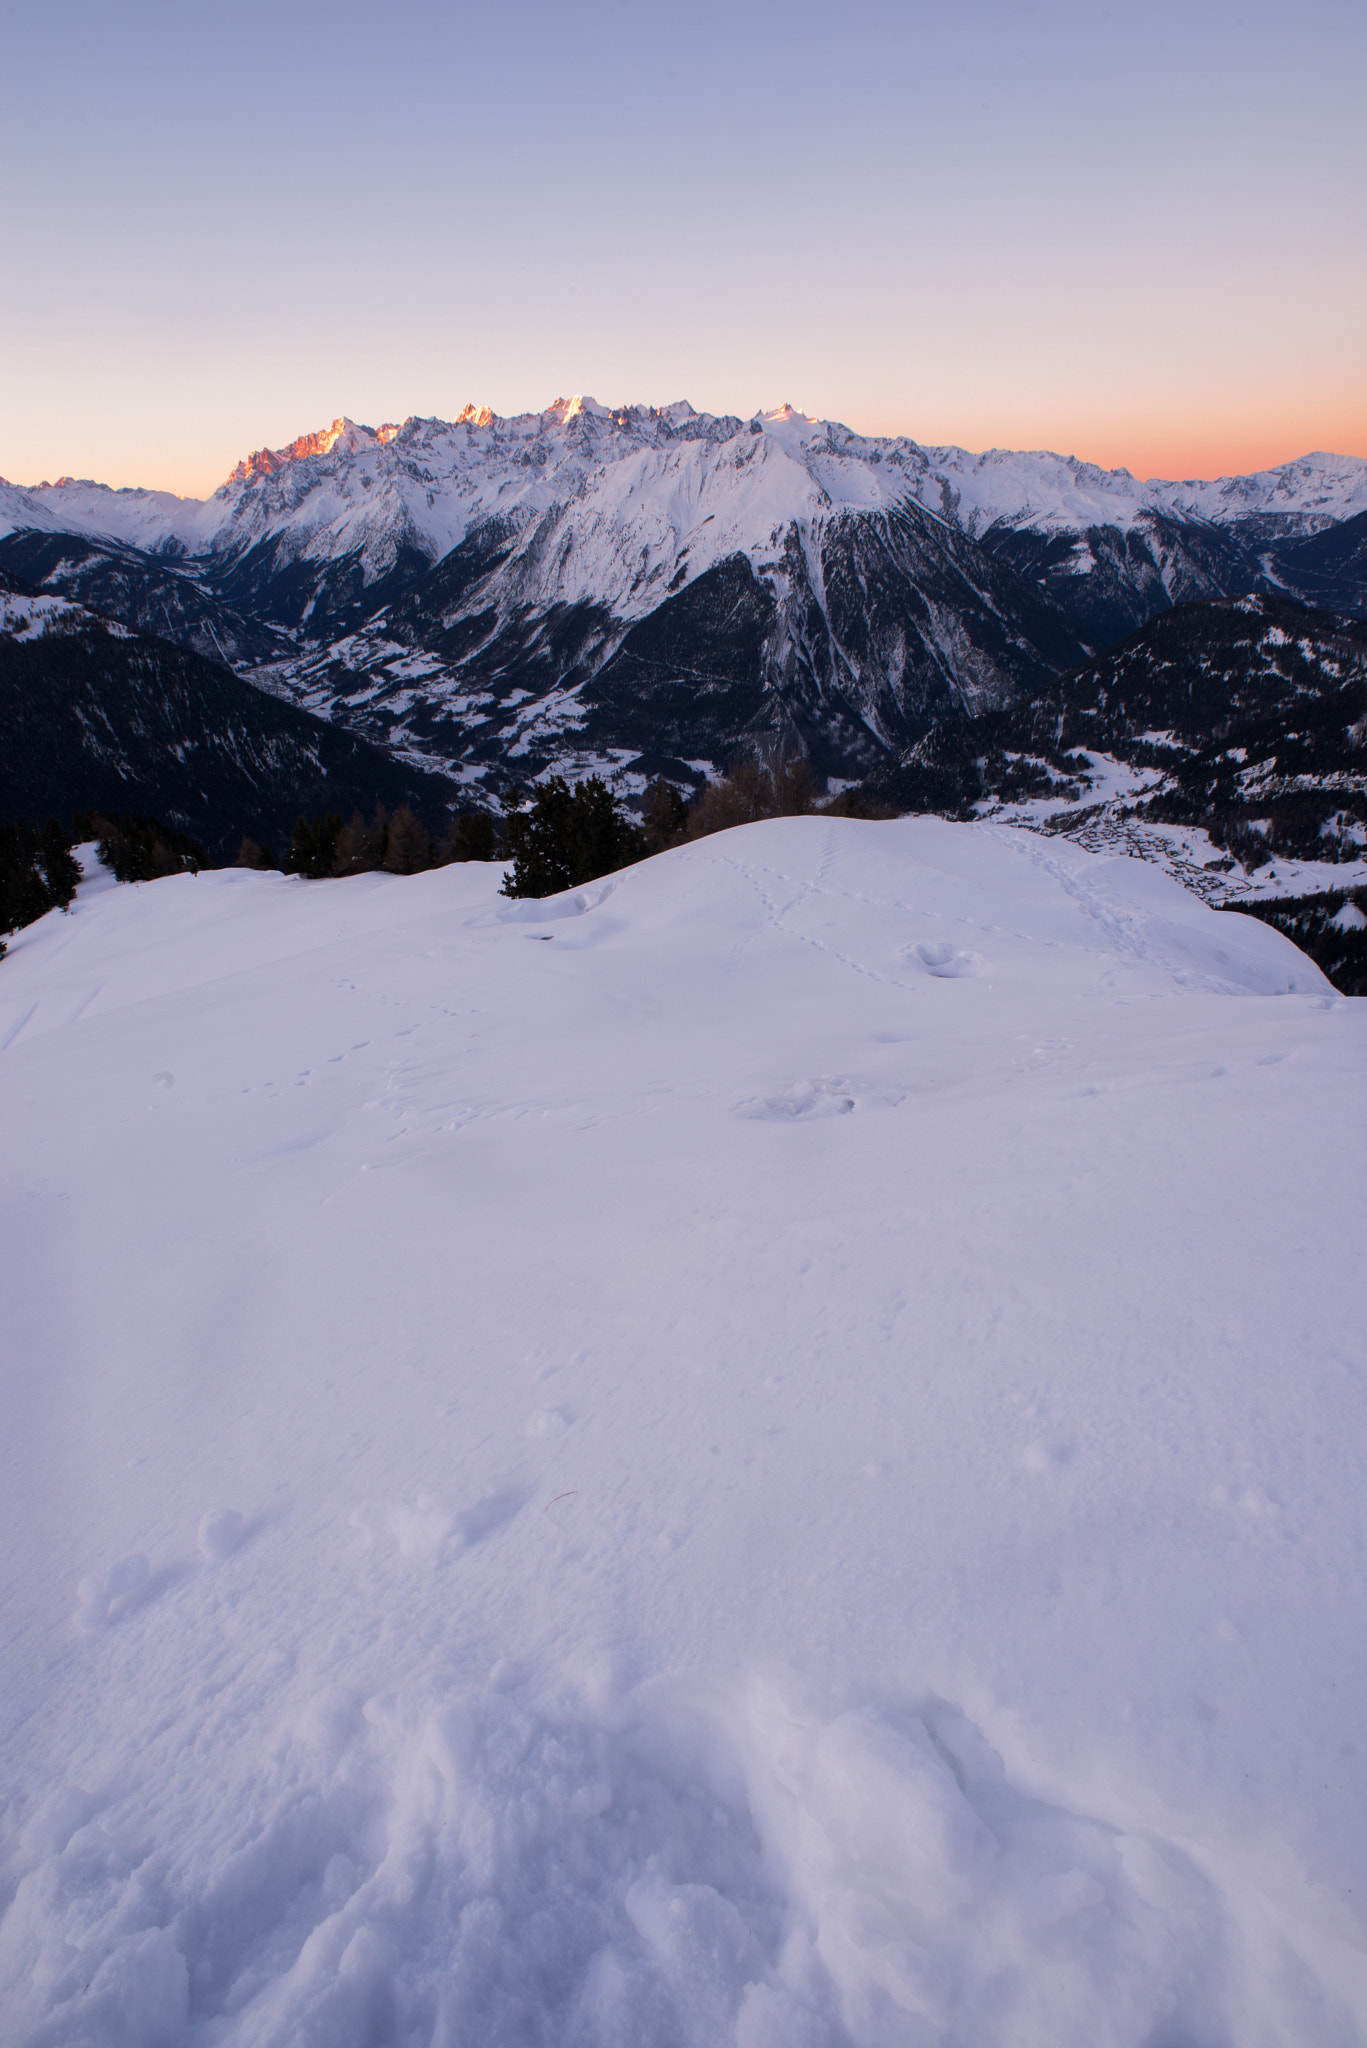 Nikon D610 + AF Nikkor 20mm f/2.8 sample photo. Mont blanc massif sunrise photography